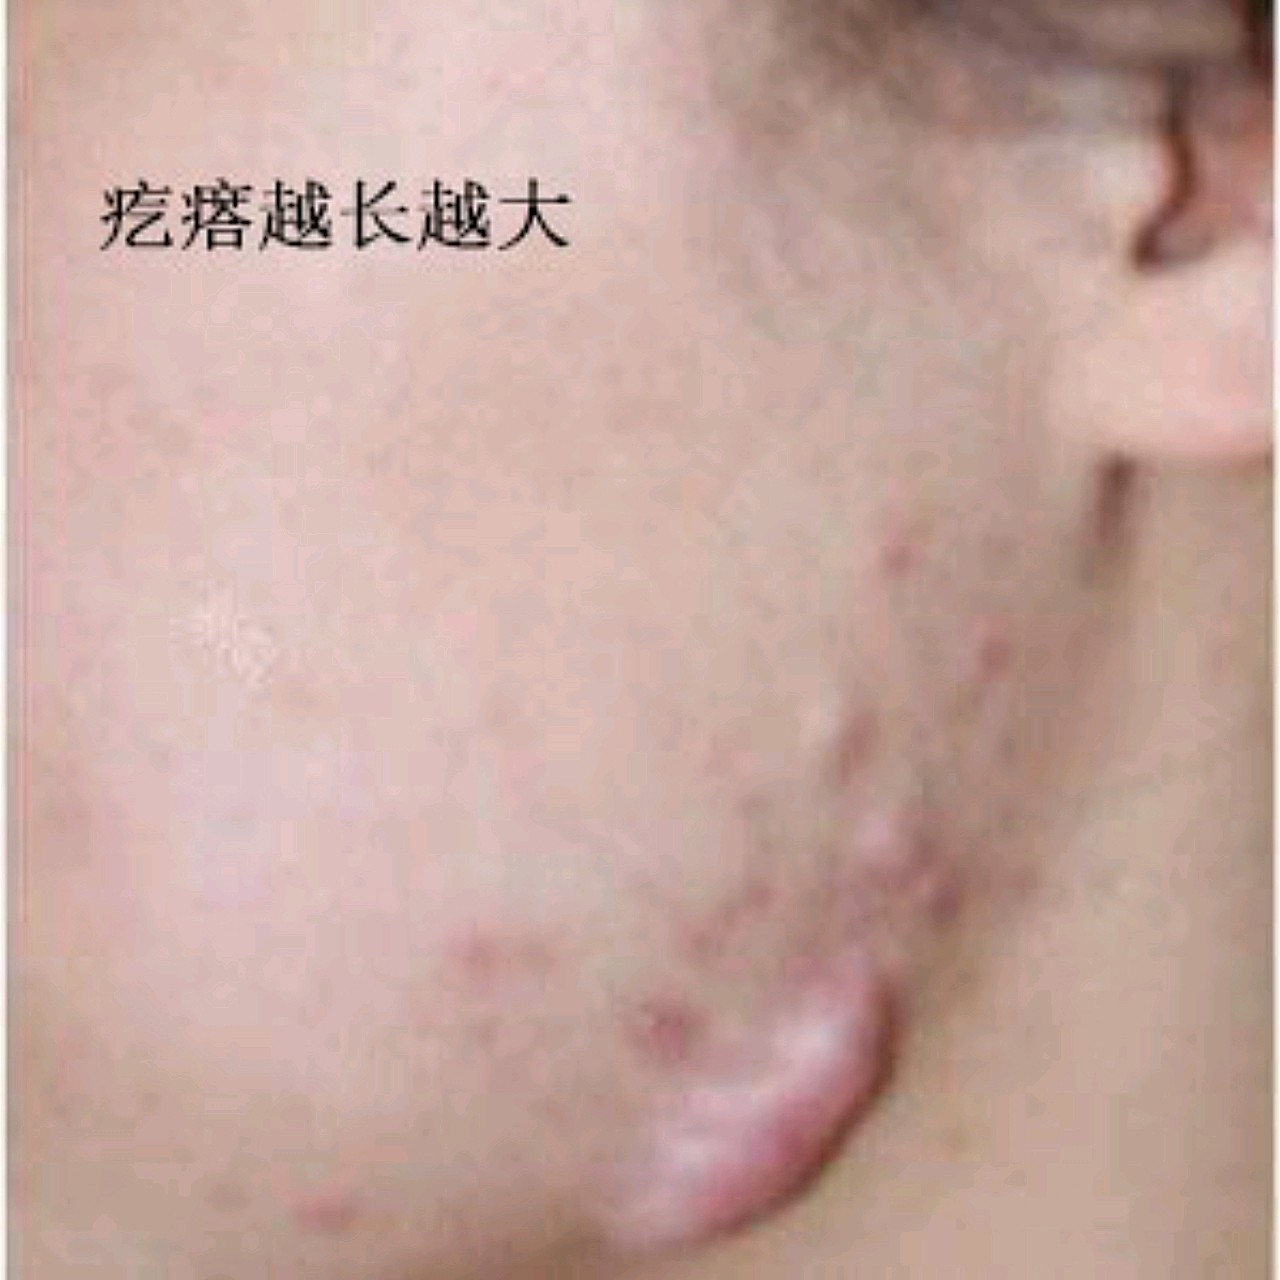 疤痕疙瘩有好几年,由于长期长痘痘,而且是疤痕体质,_圈子-新氧美容